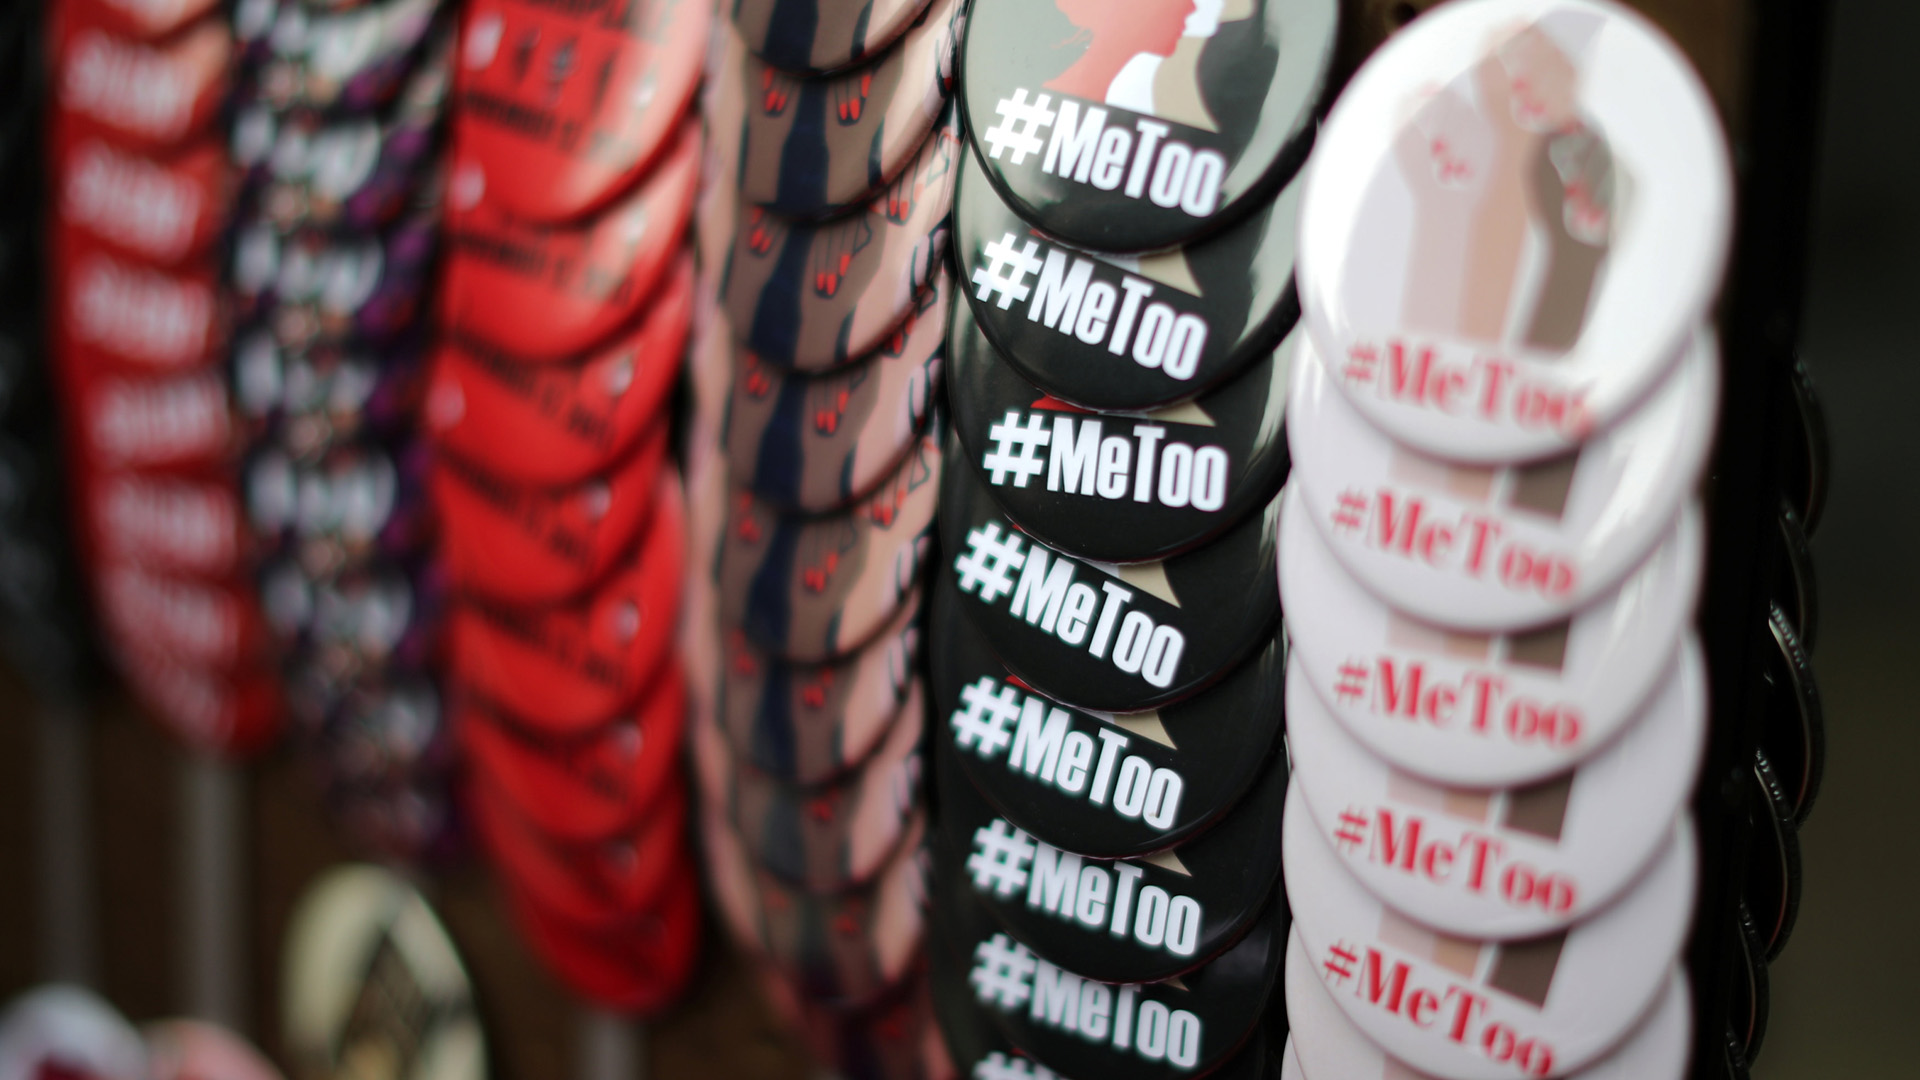 Anstecker mit dem Hashtag #metoo an einem Verkaufsstand in Hollywood | Bildquelle: REUTERS